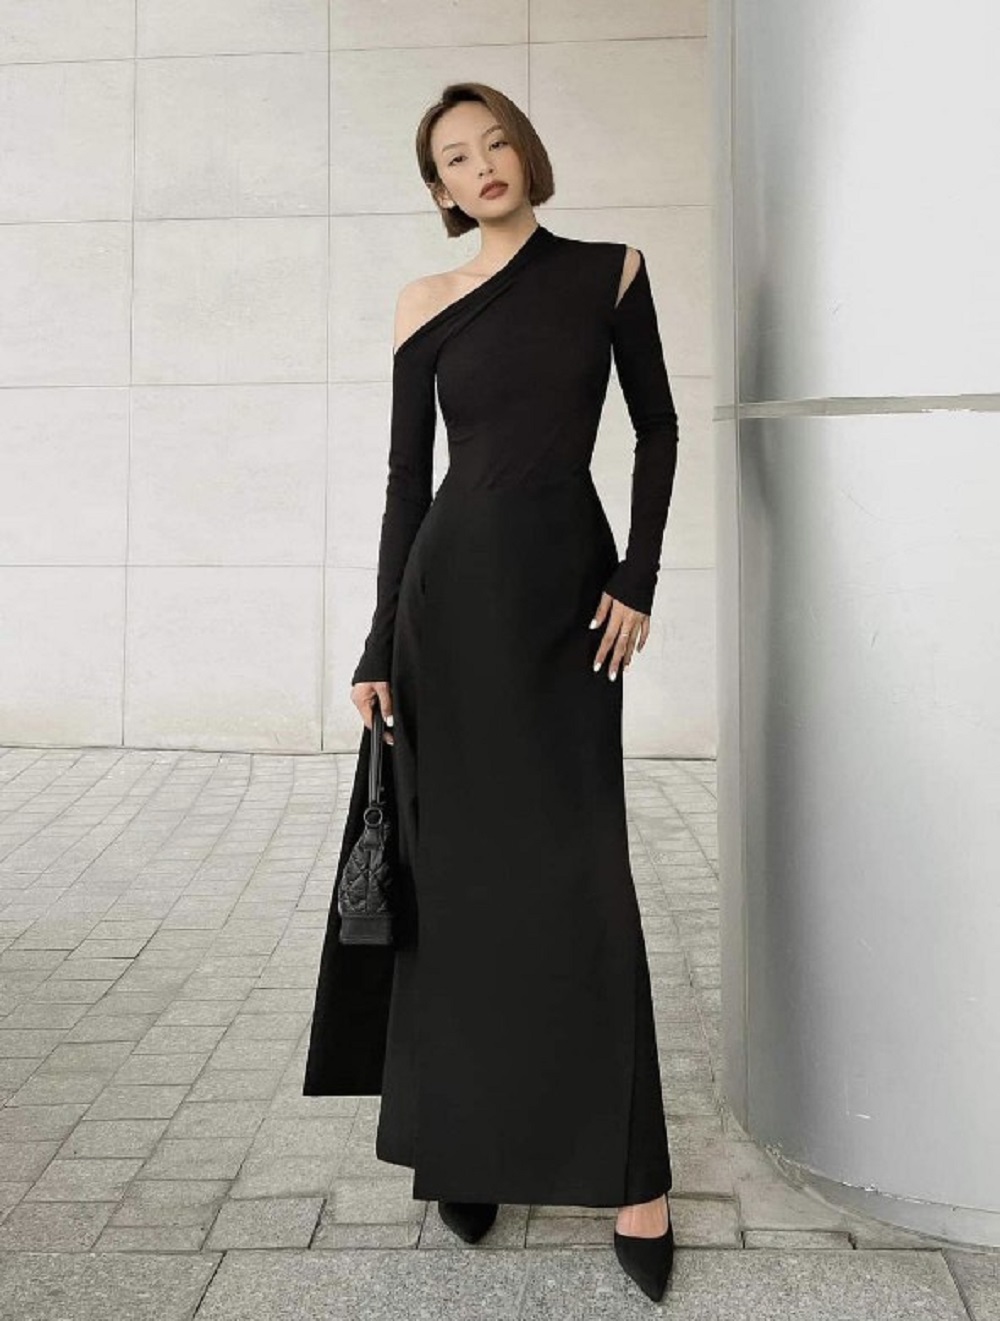 Những kiểu váy đen giúp phái đẹp trông sang trọng, quyến rũ | Báo Dân trí